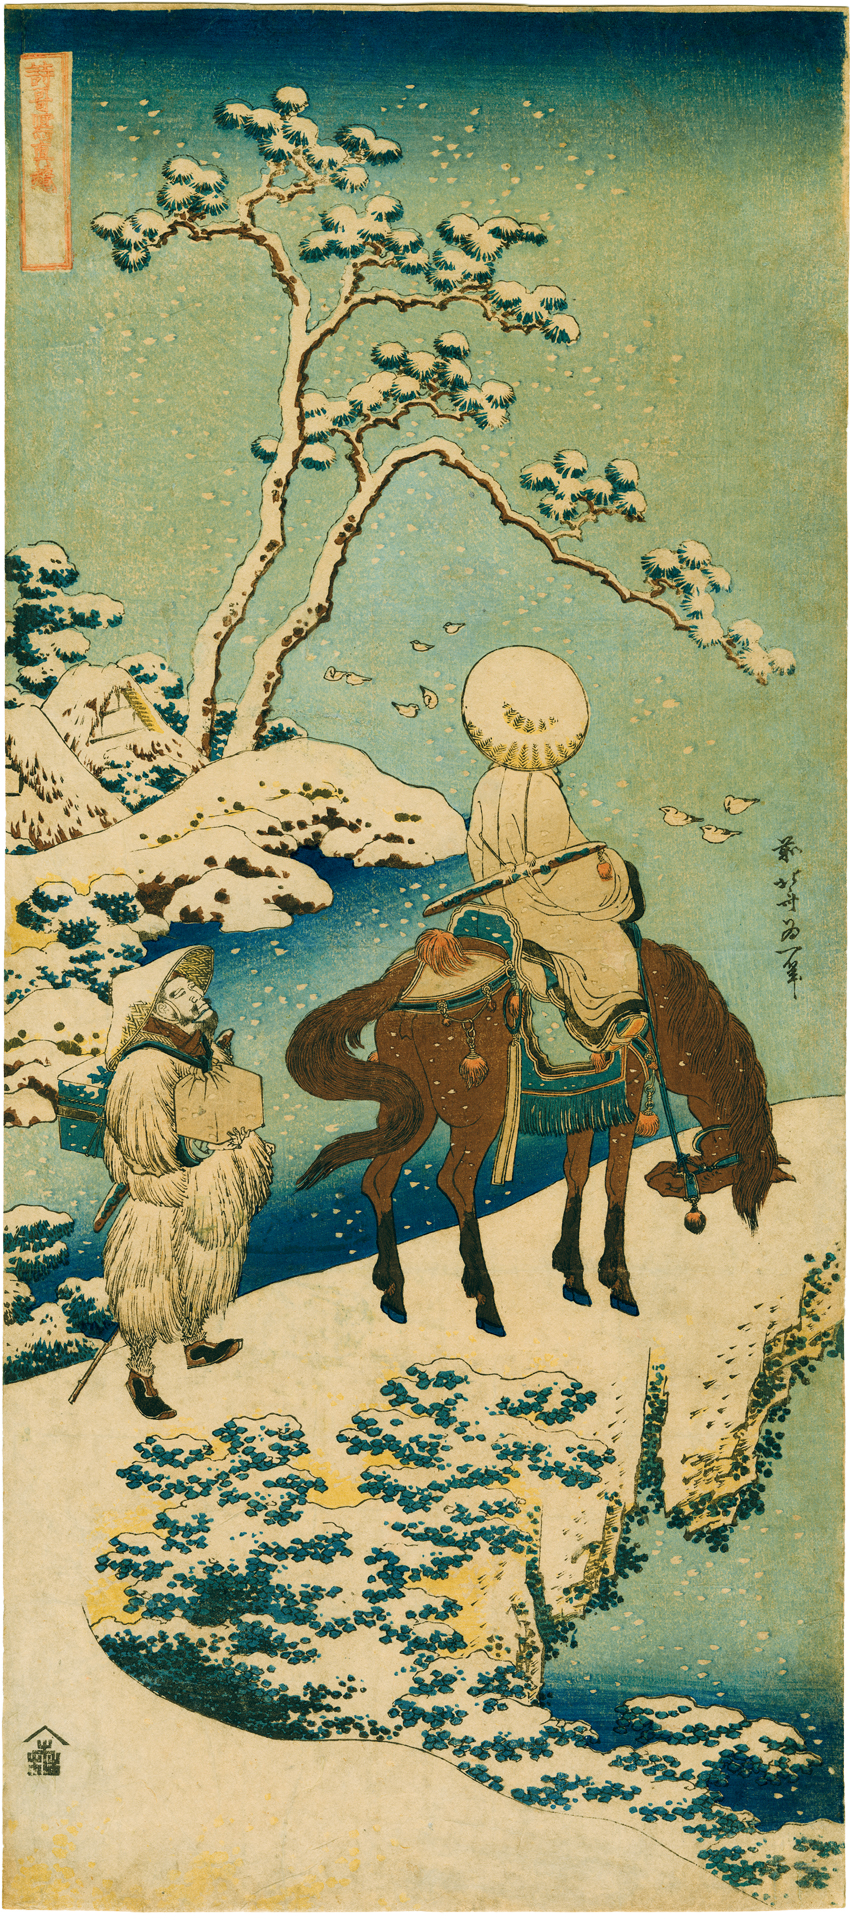 Hokusai, Cavalier et serviteur dans un paysage de neige. - Image en taille réelle, .JPG 2,26Mo (fenêtre modale)